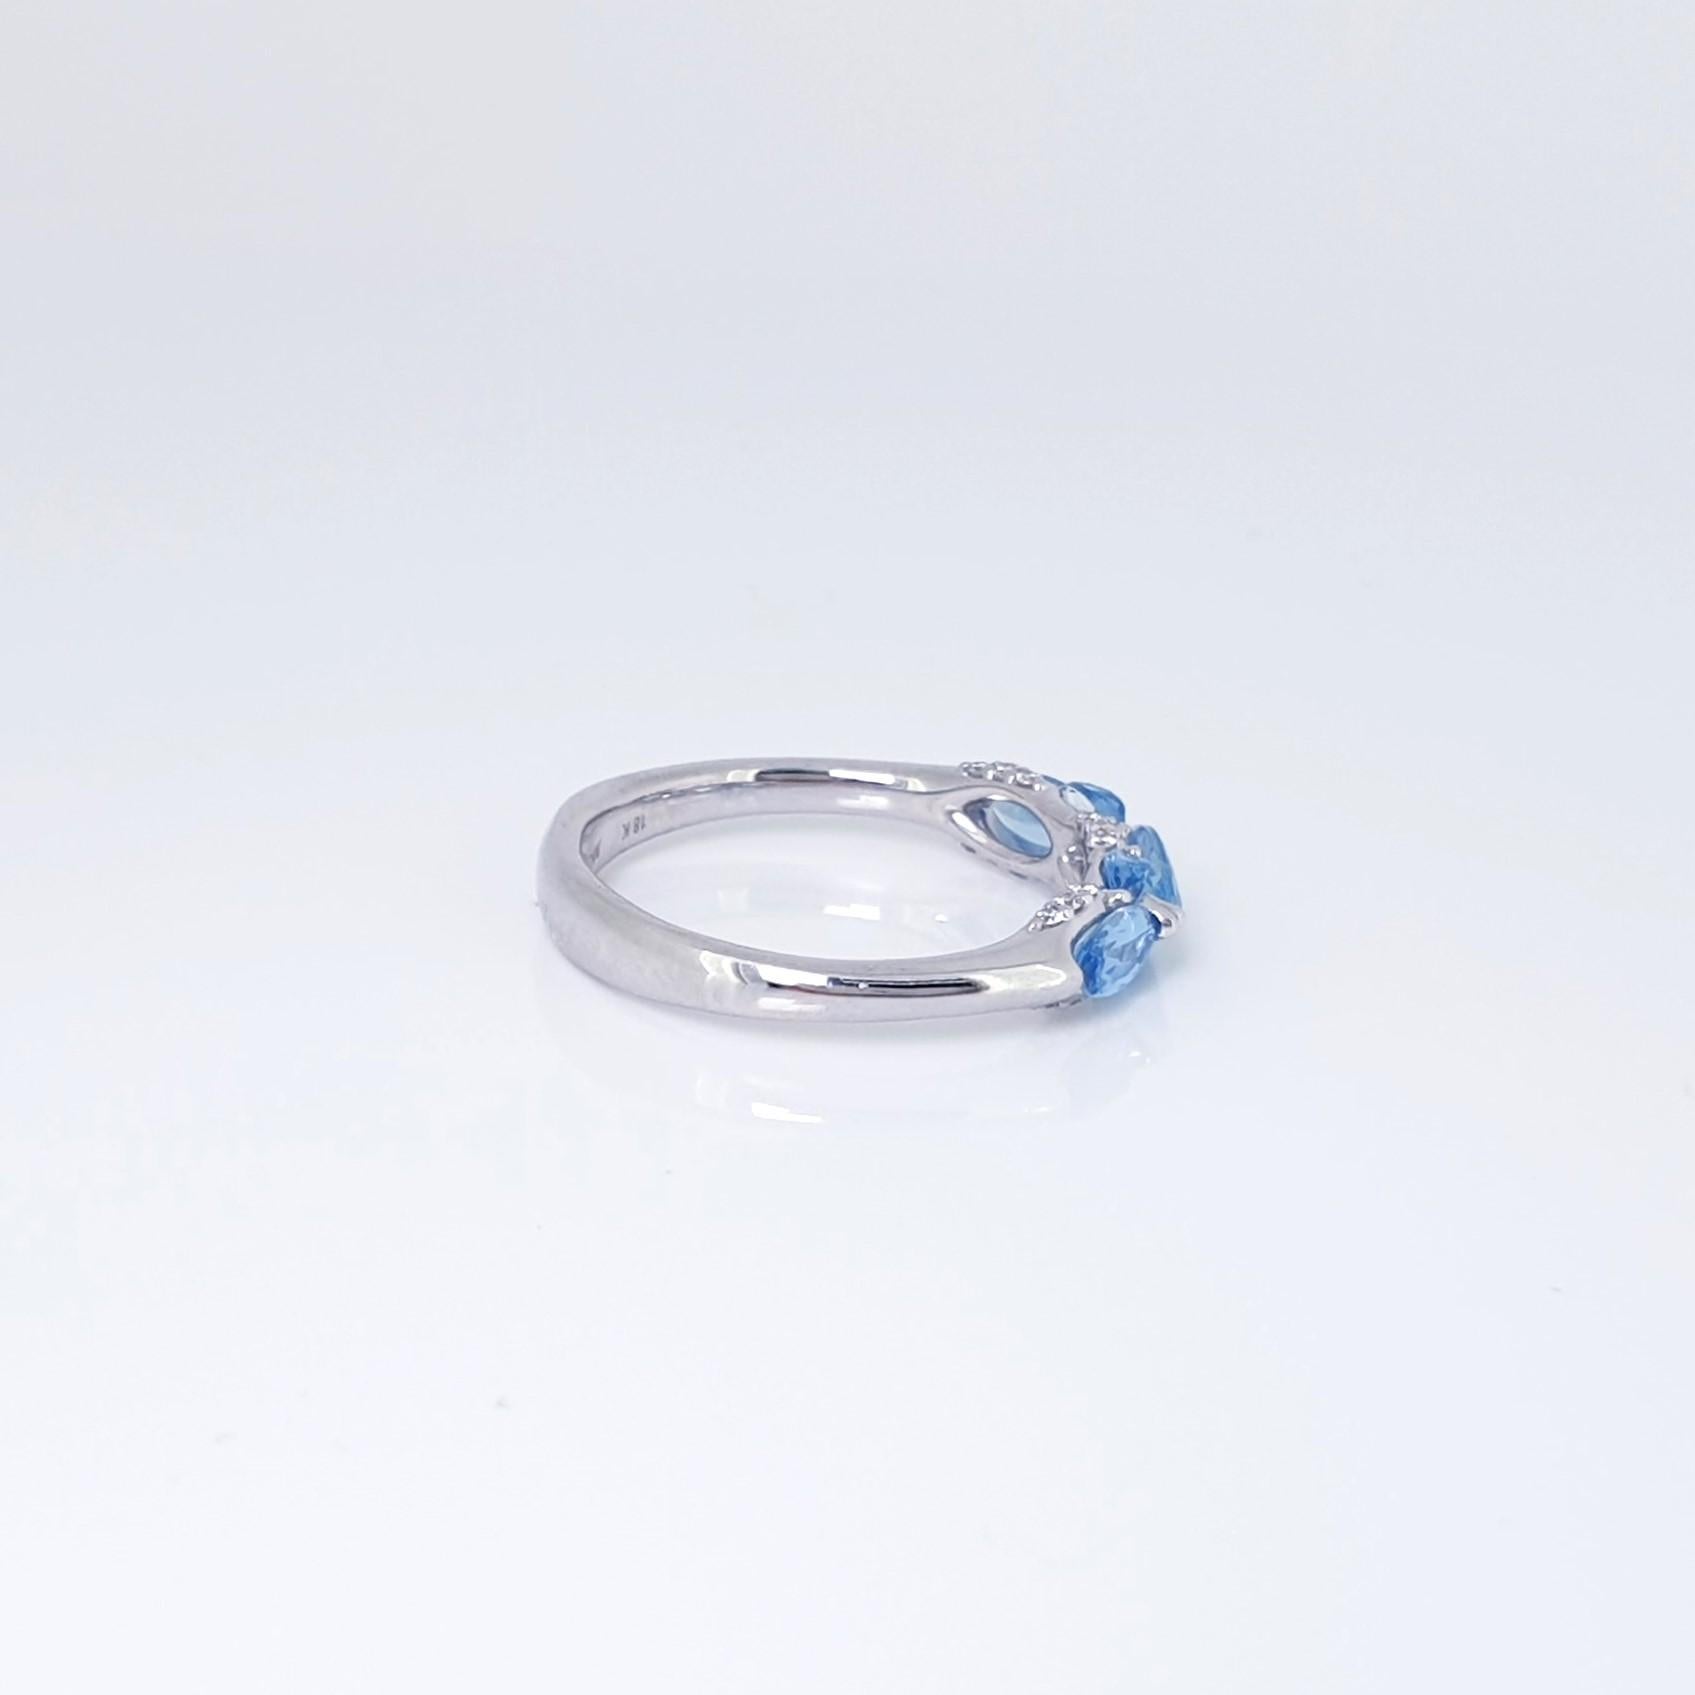 Marquise Cut Customised Santa Maria Aquamarine Diamond Ring, size 19.0mm diameter For Sale